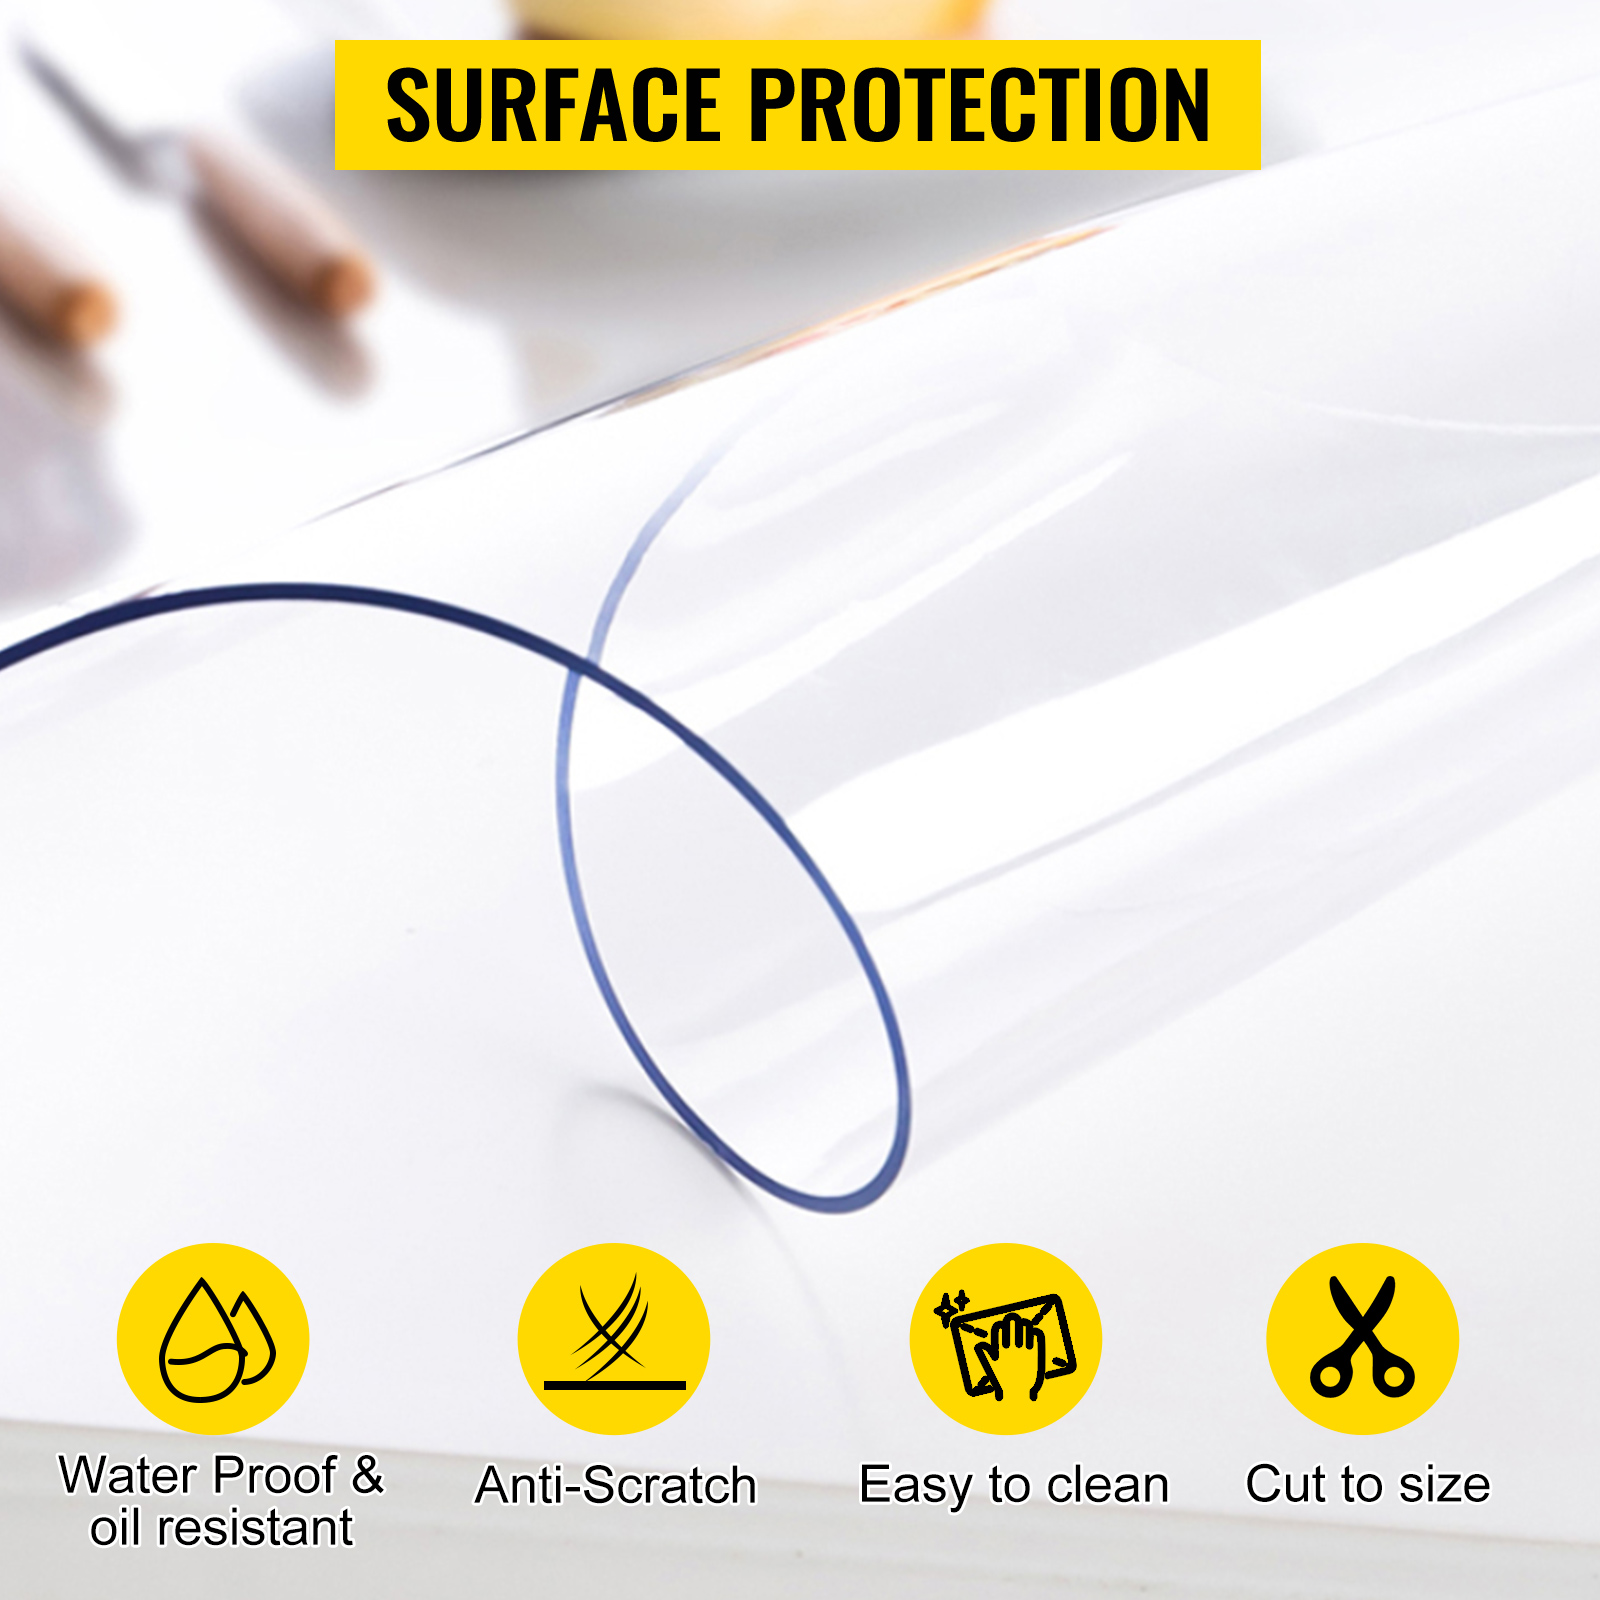  Protector de mesa de PVC transparente de 0.059 in de